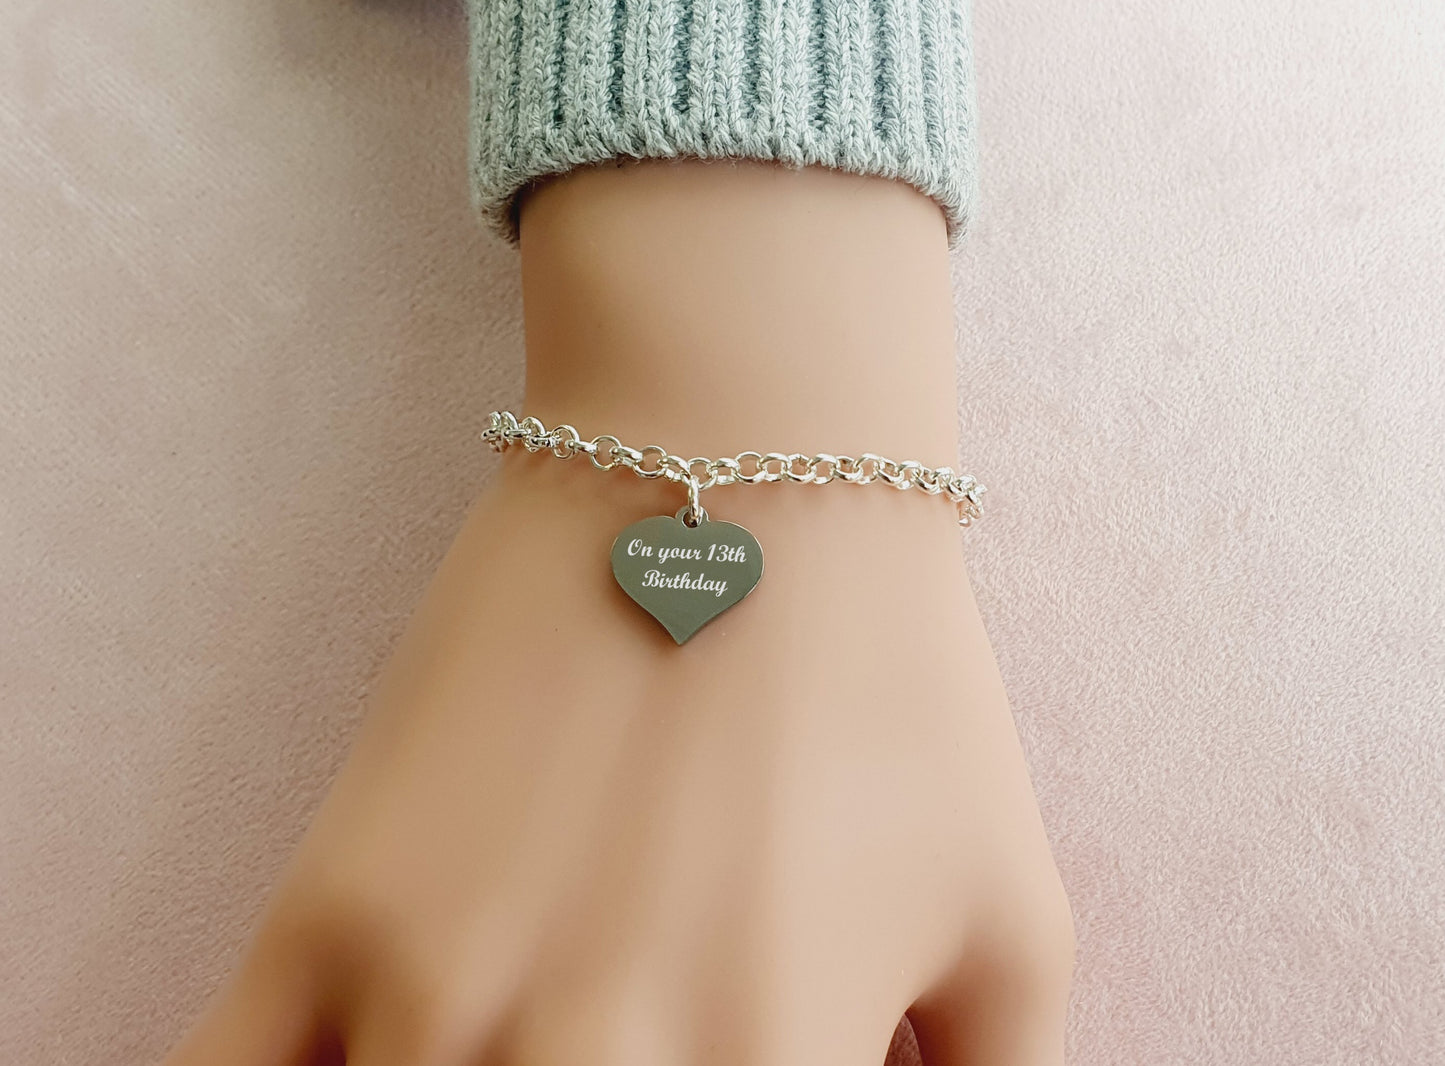 13th Birthday Engraved Heart Charm Link Bracelet, Gift for Girl's